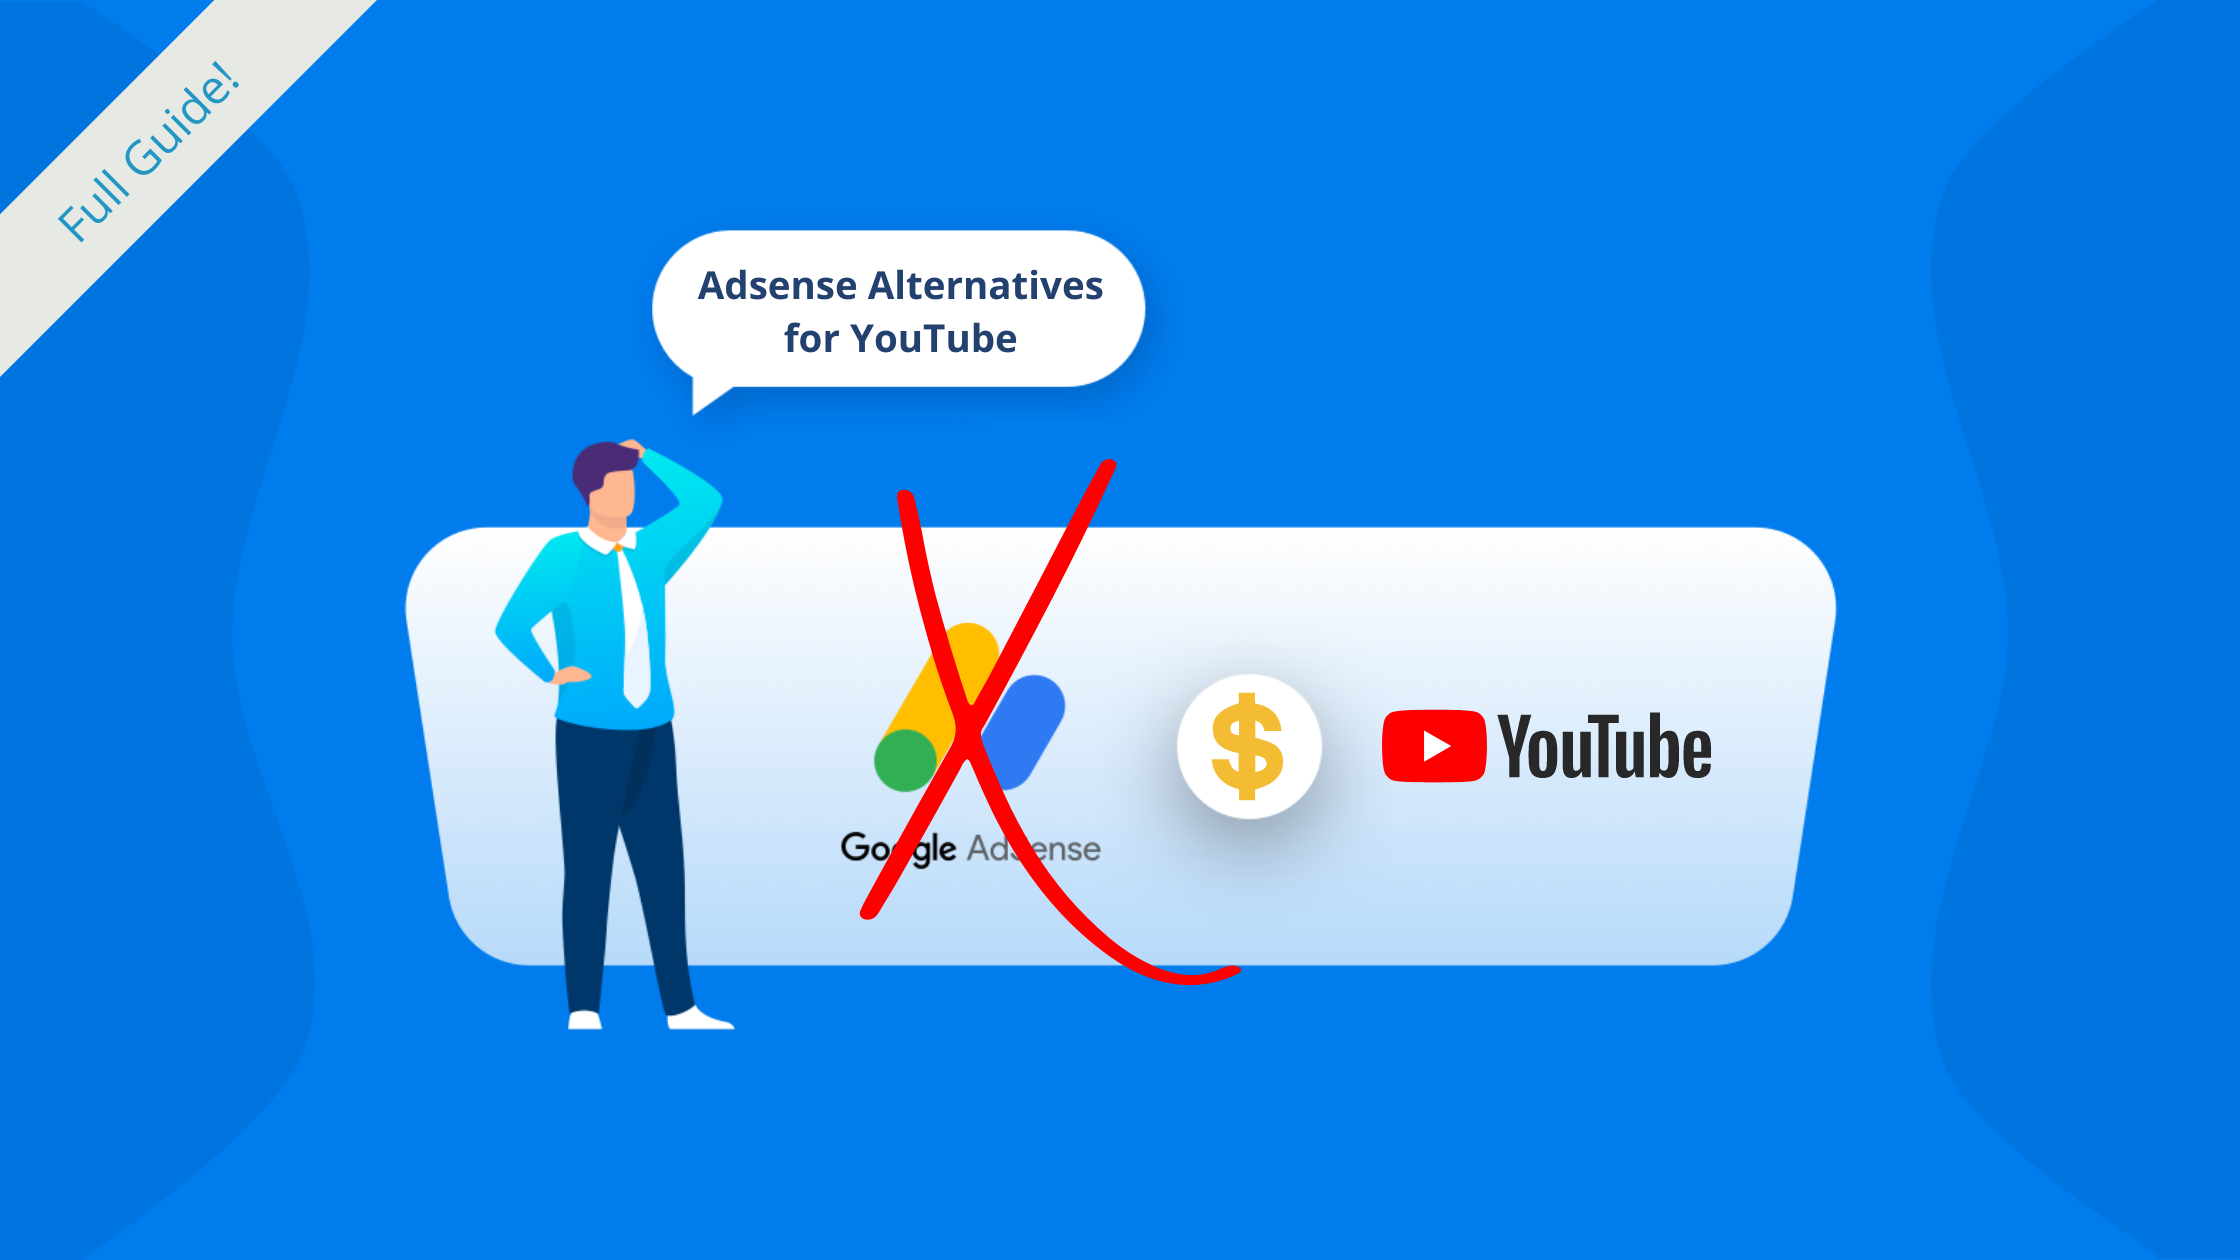 Adsense Alternatives for YouTube